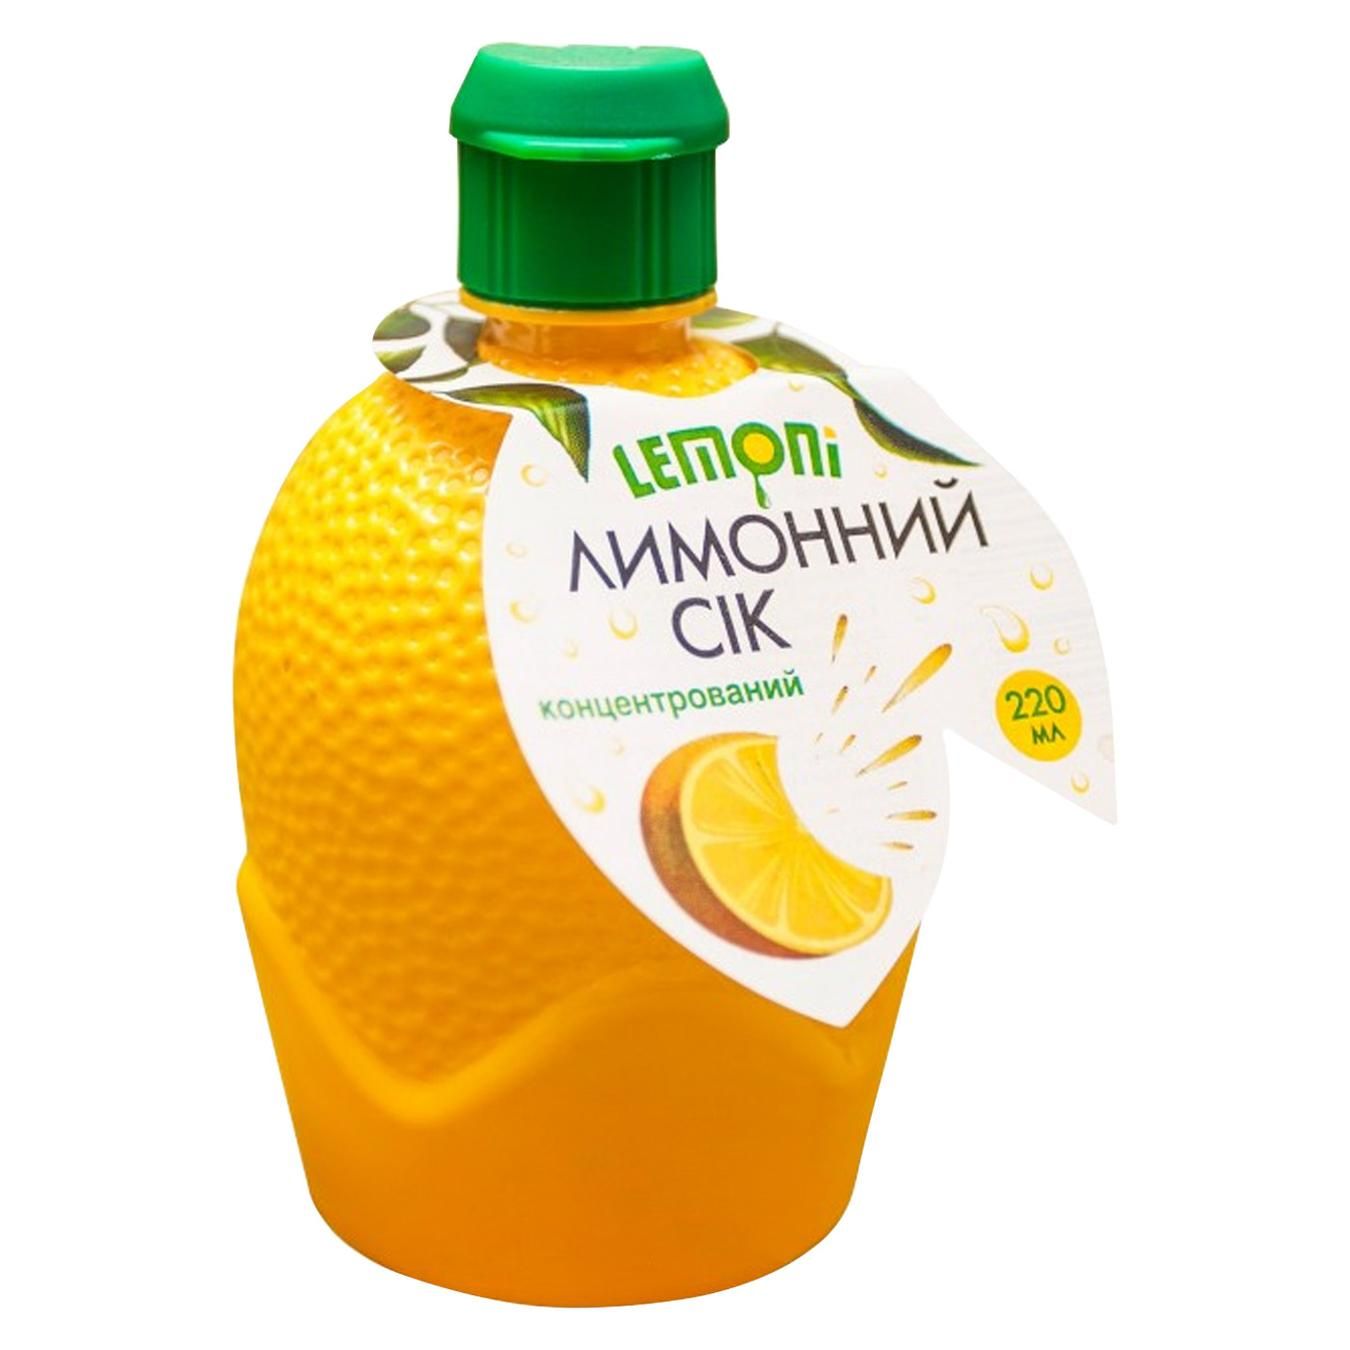 Лимоний сік Lemoni 220 мл